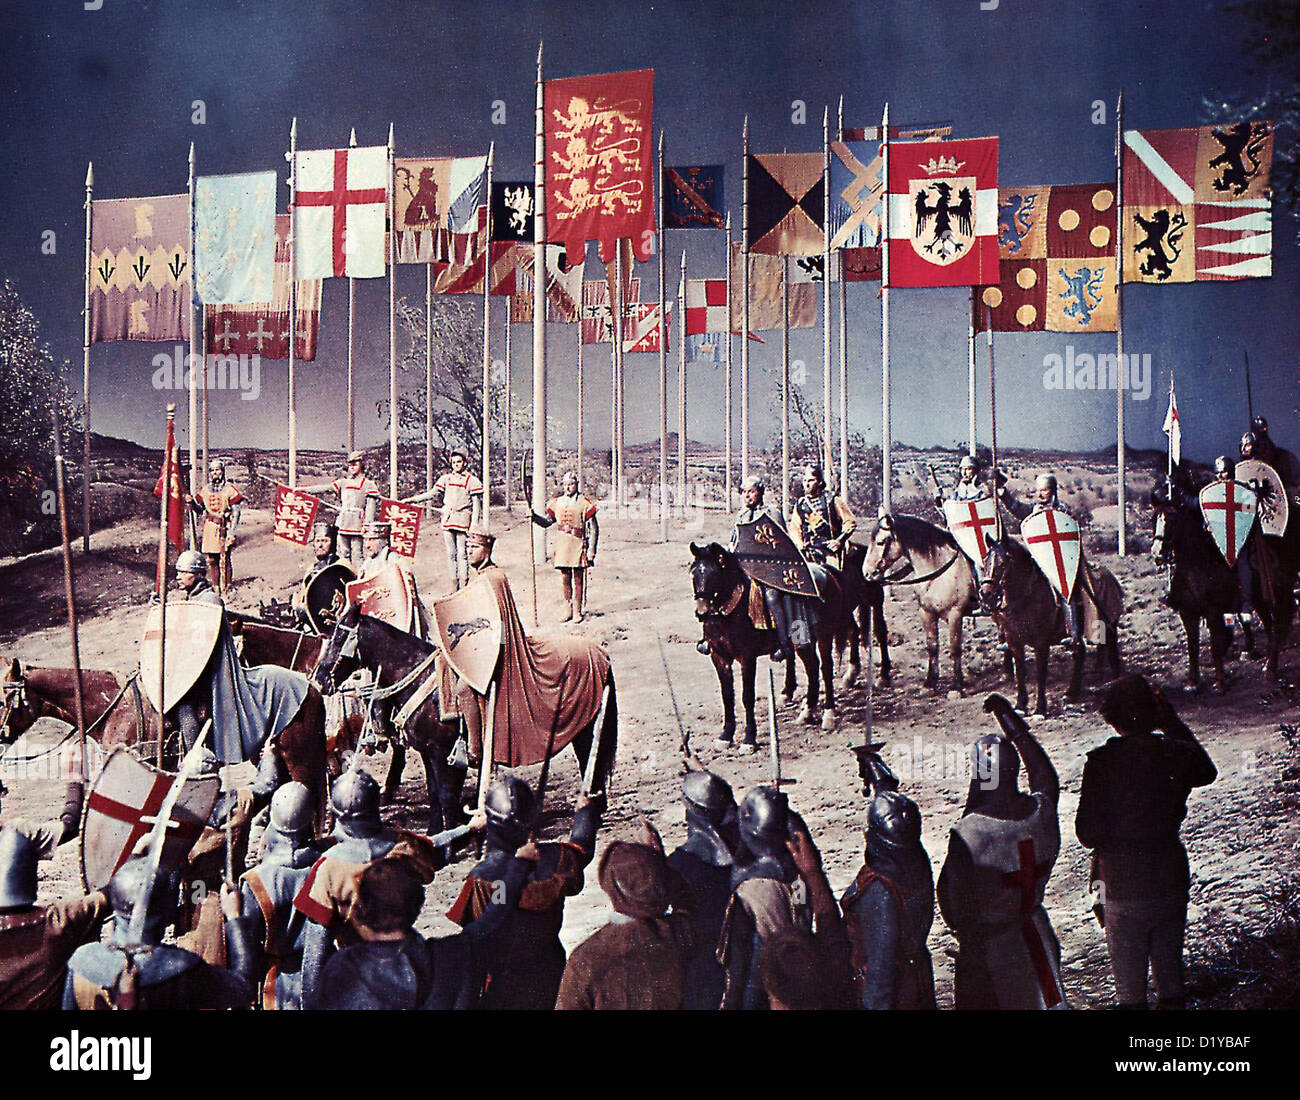 Der Talisman   King Richard And The Crusaders   Szene Die Ritter stellen sich zur Schlacht auf. *** Local Caption *** 1954  -- Stock Photo